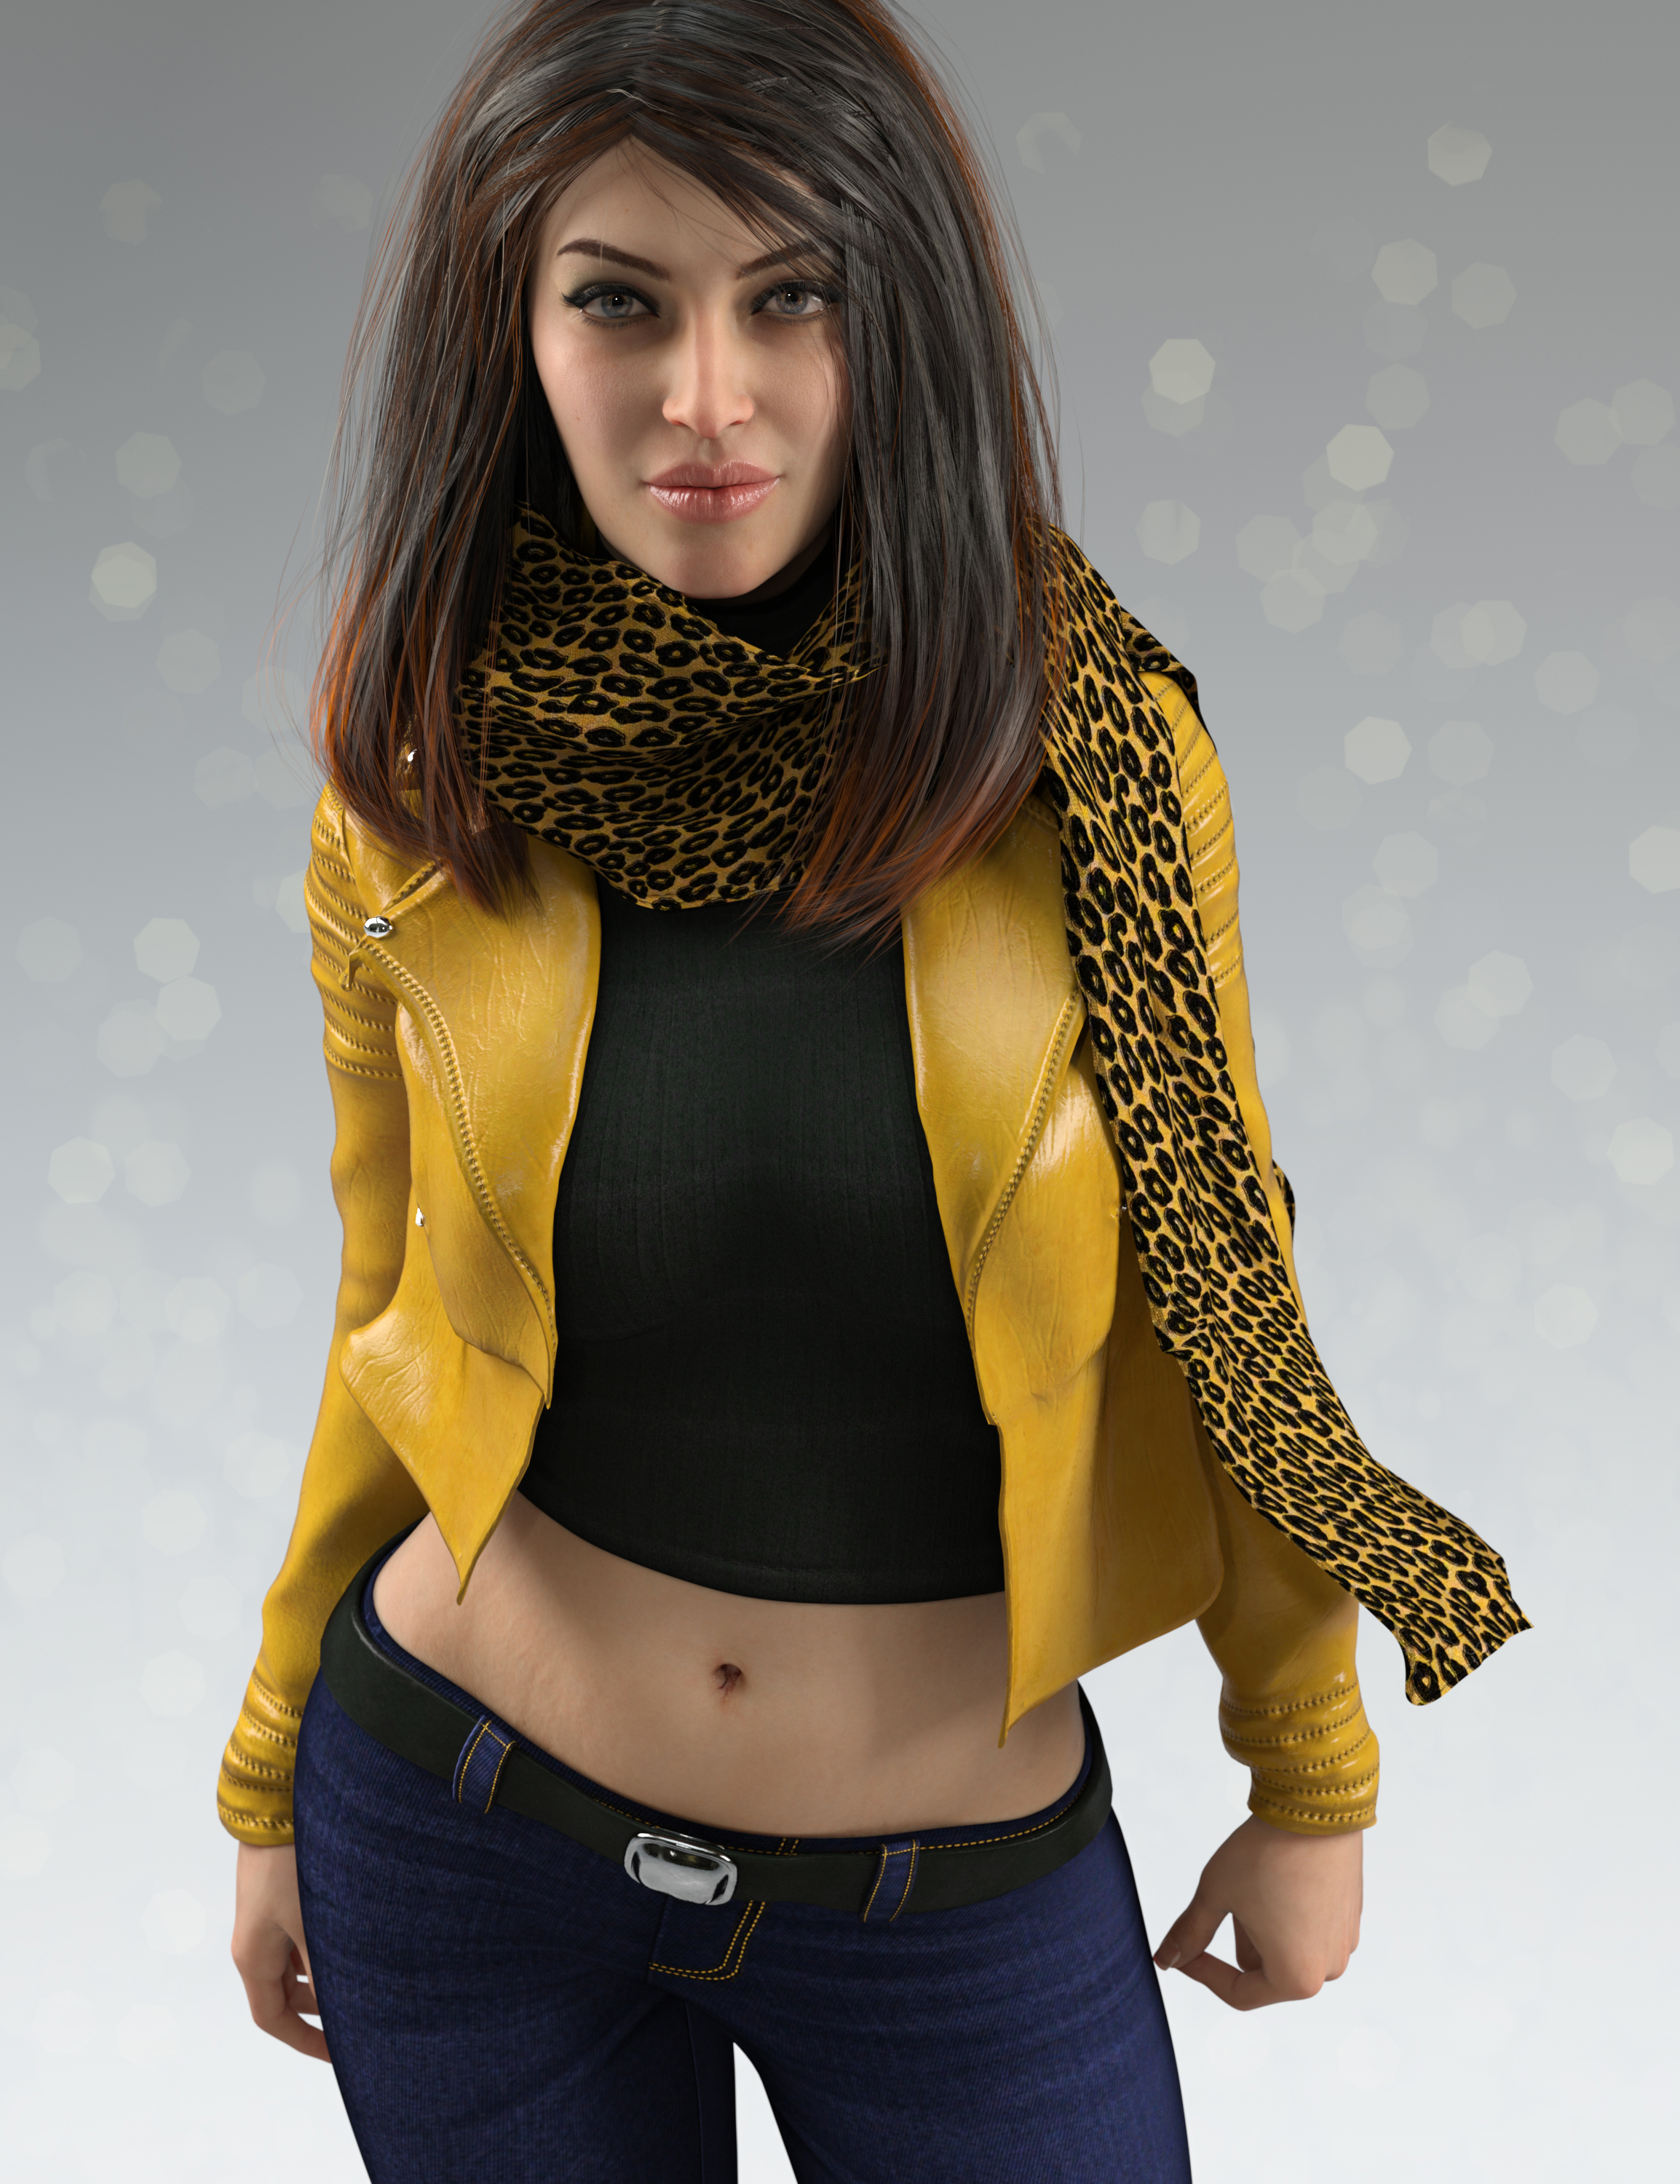 Septima HD for Genesis 8.1 Female by: MorrisEmrys, 3D Models by Daz 3D